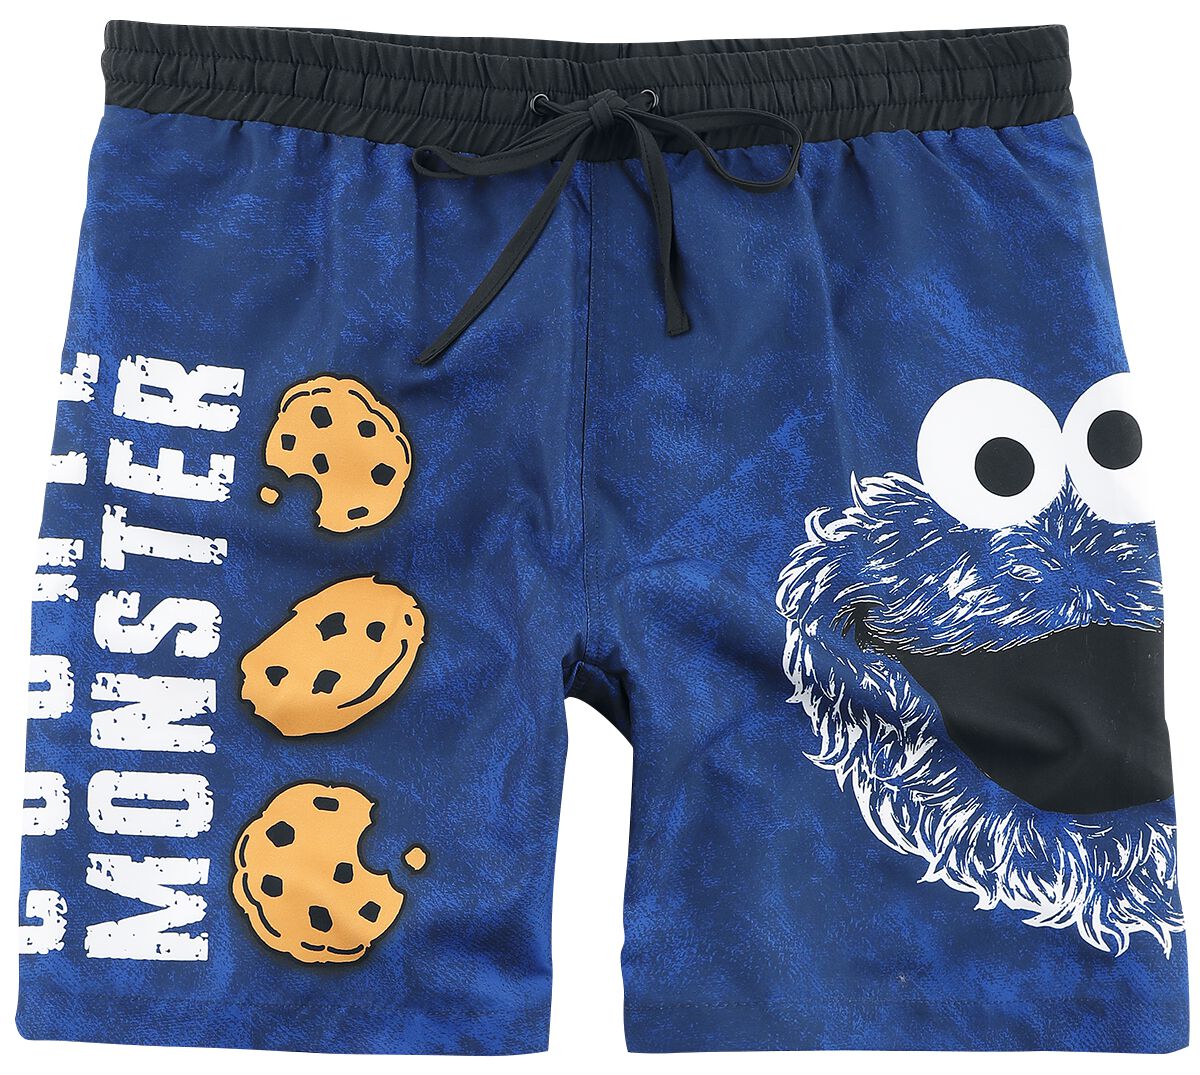 Sesamstraße Badeshort - Cookie Monster - Face - M bis 3XL - für Männer - Größe M - blau  - EMP exklusives Merchandise!